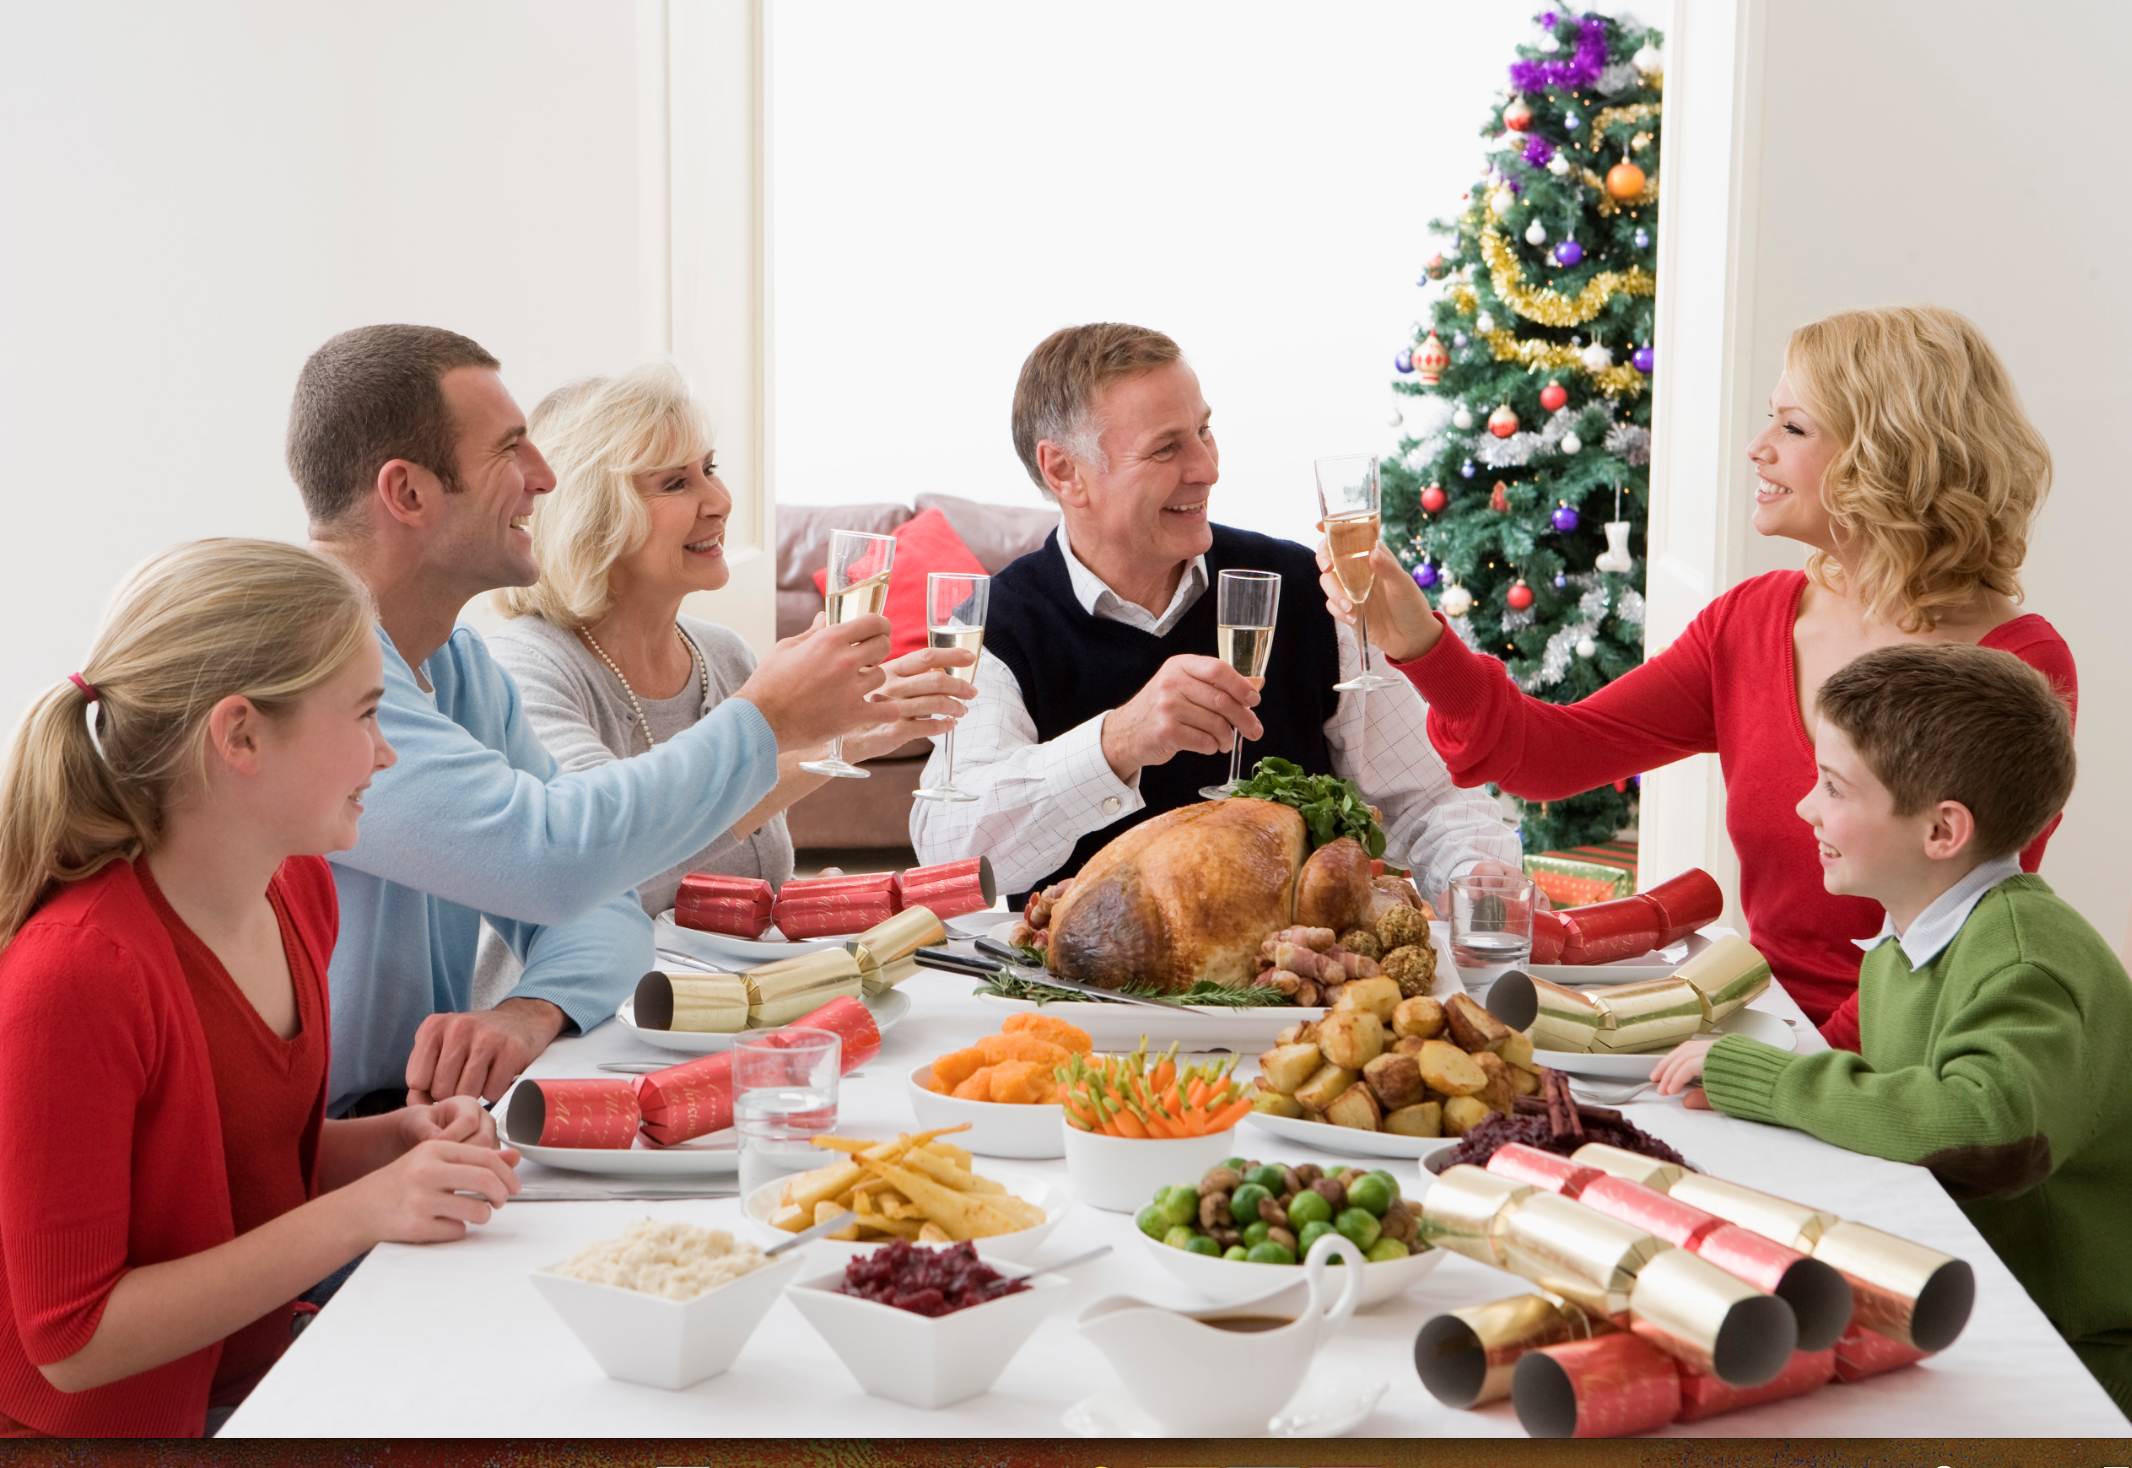 Сценарии дня рождения в кругу семьи. Семья за праздничным столом. Люди за праздничным столом. Семейное застолье. Новогодний ужин с семьей.